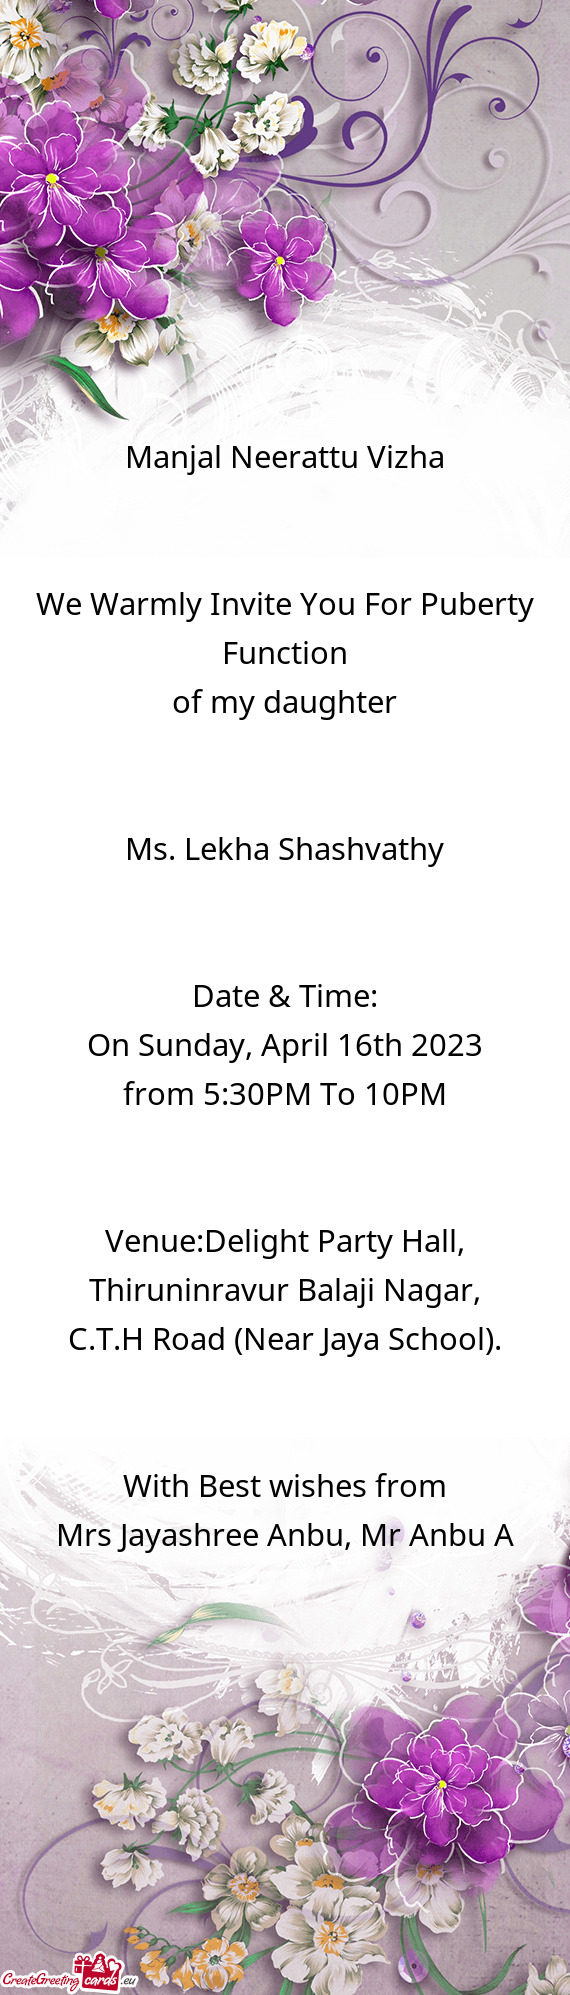 Ms. Lekha Shashvathy